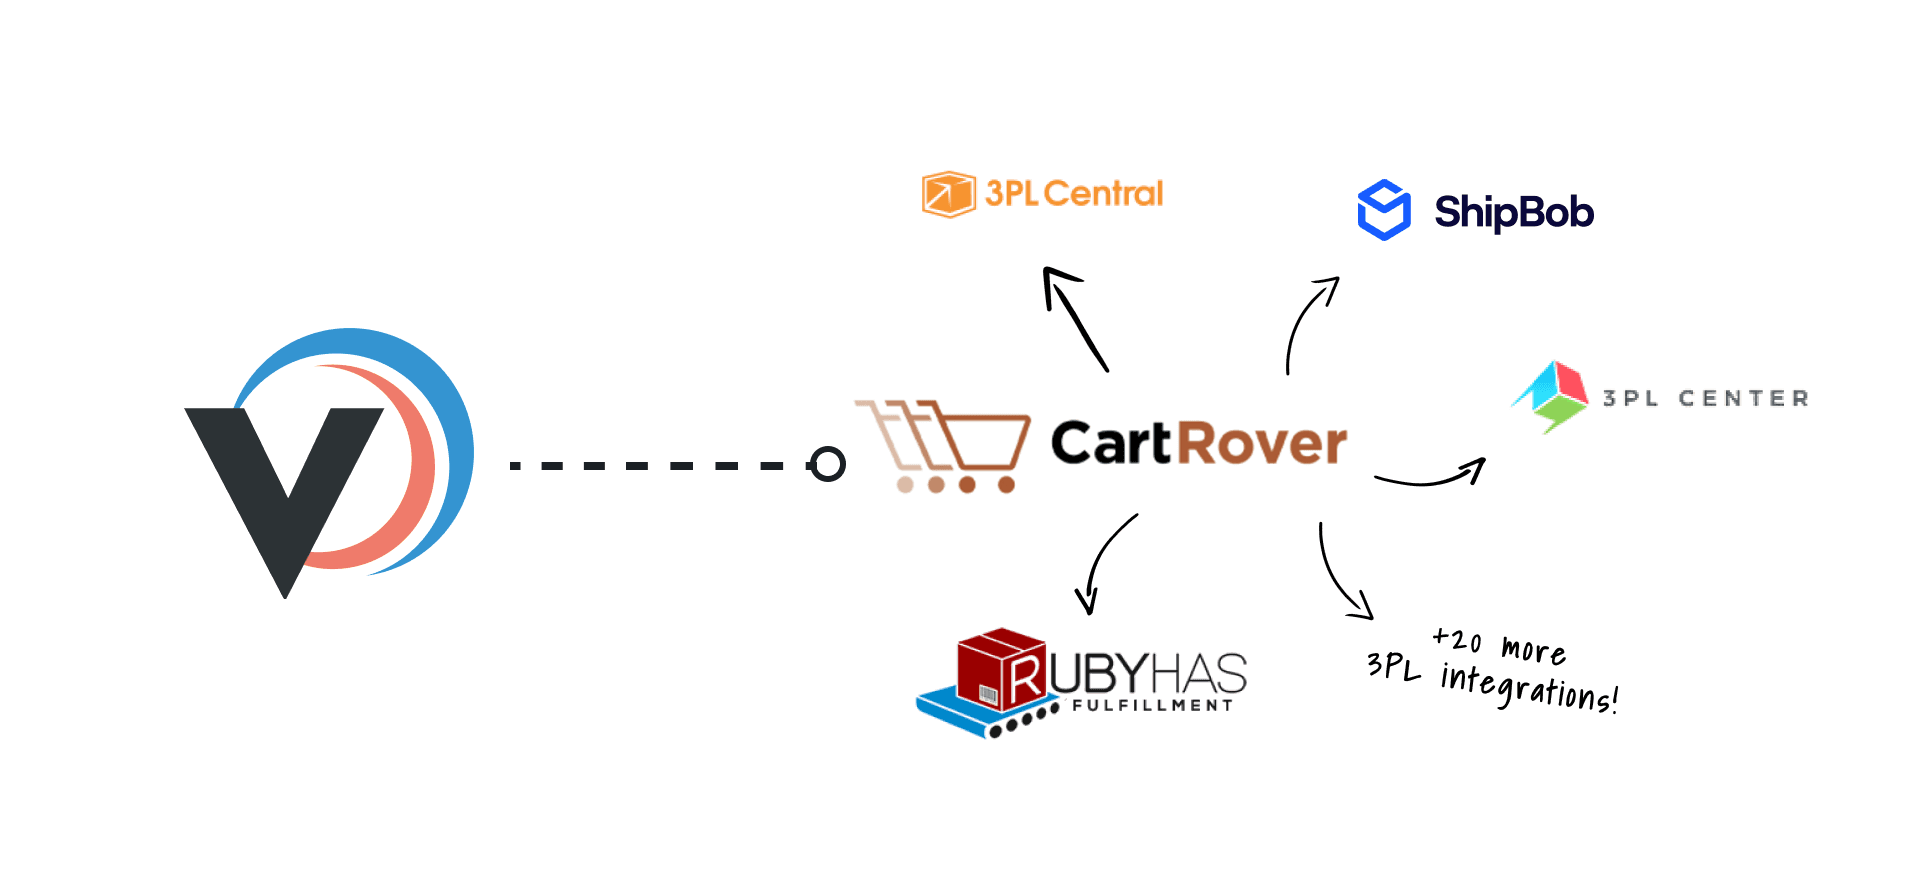 Cartrover 3pl integrations